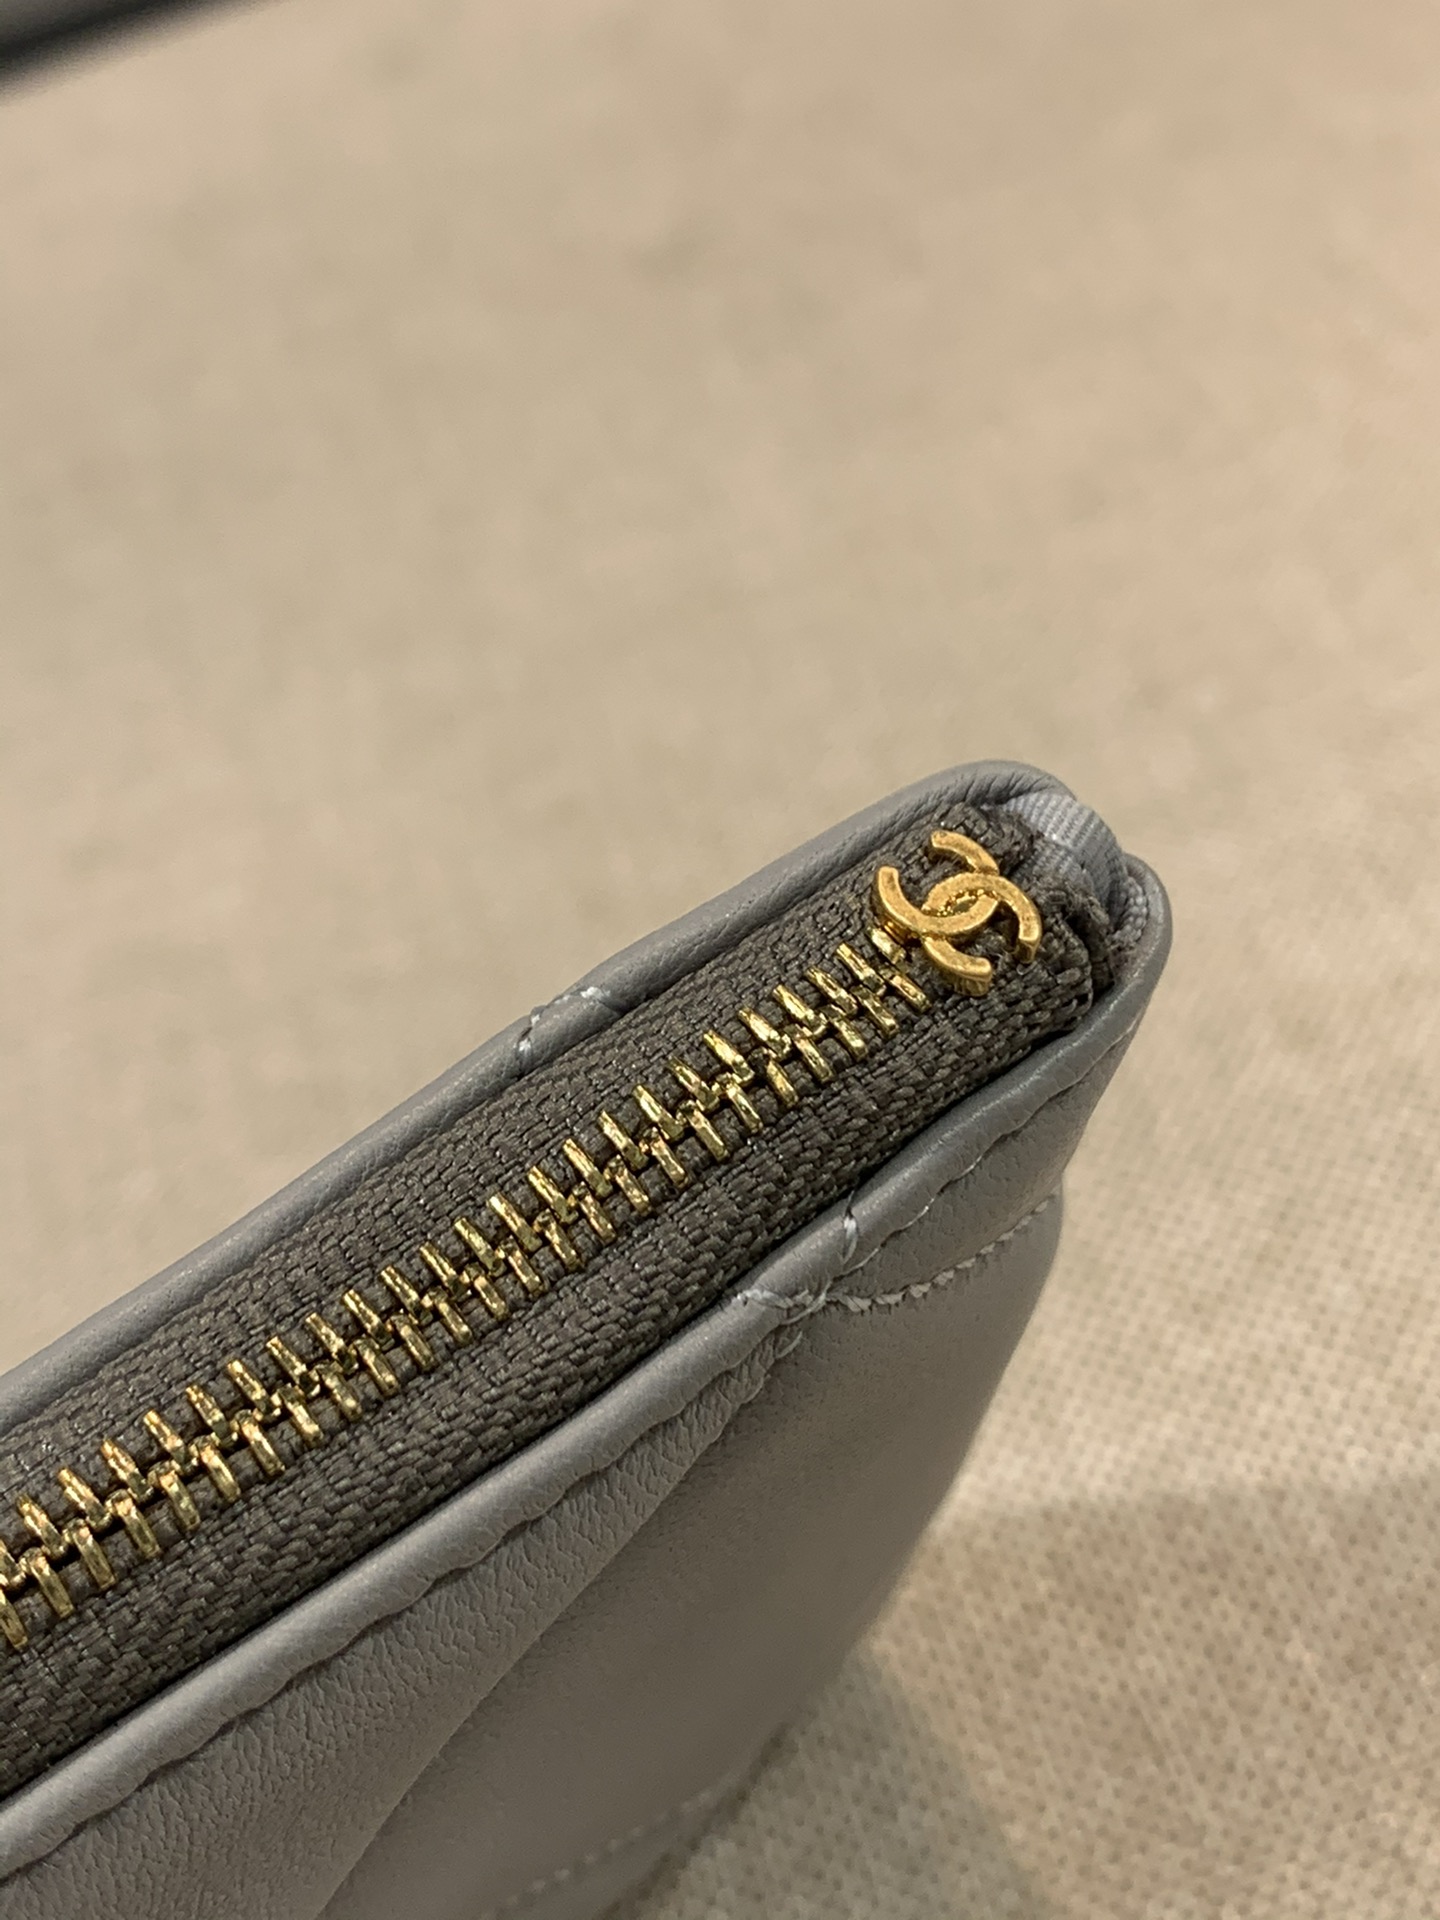 年度大热19系列小手包 放大的菱格纹 皮穿链的风格 12×20×1cm